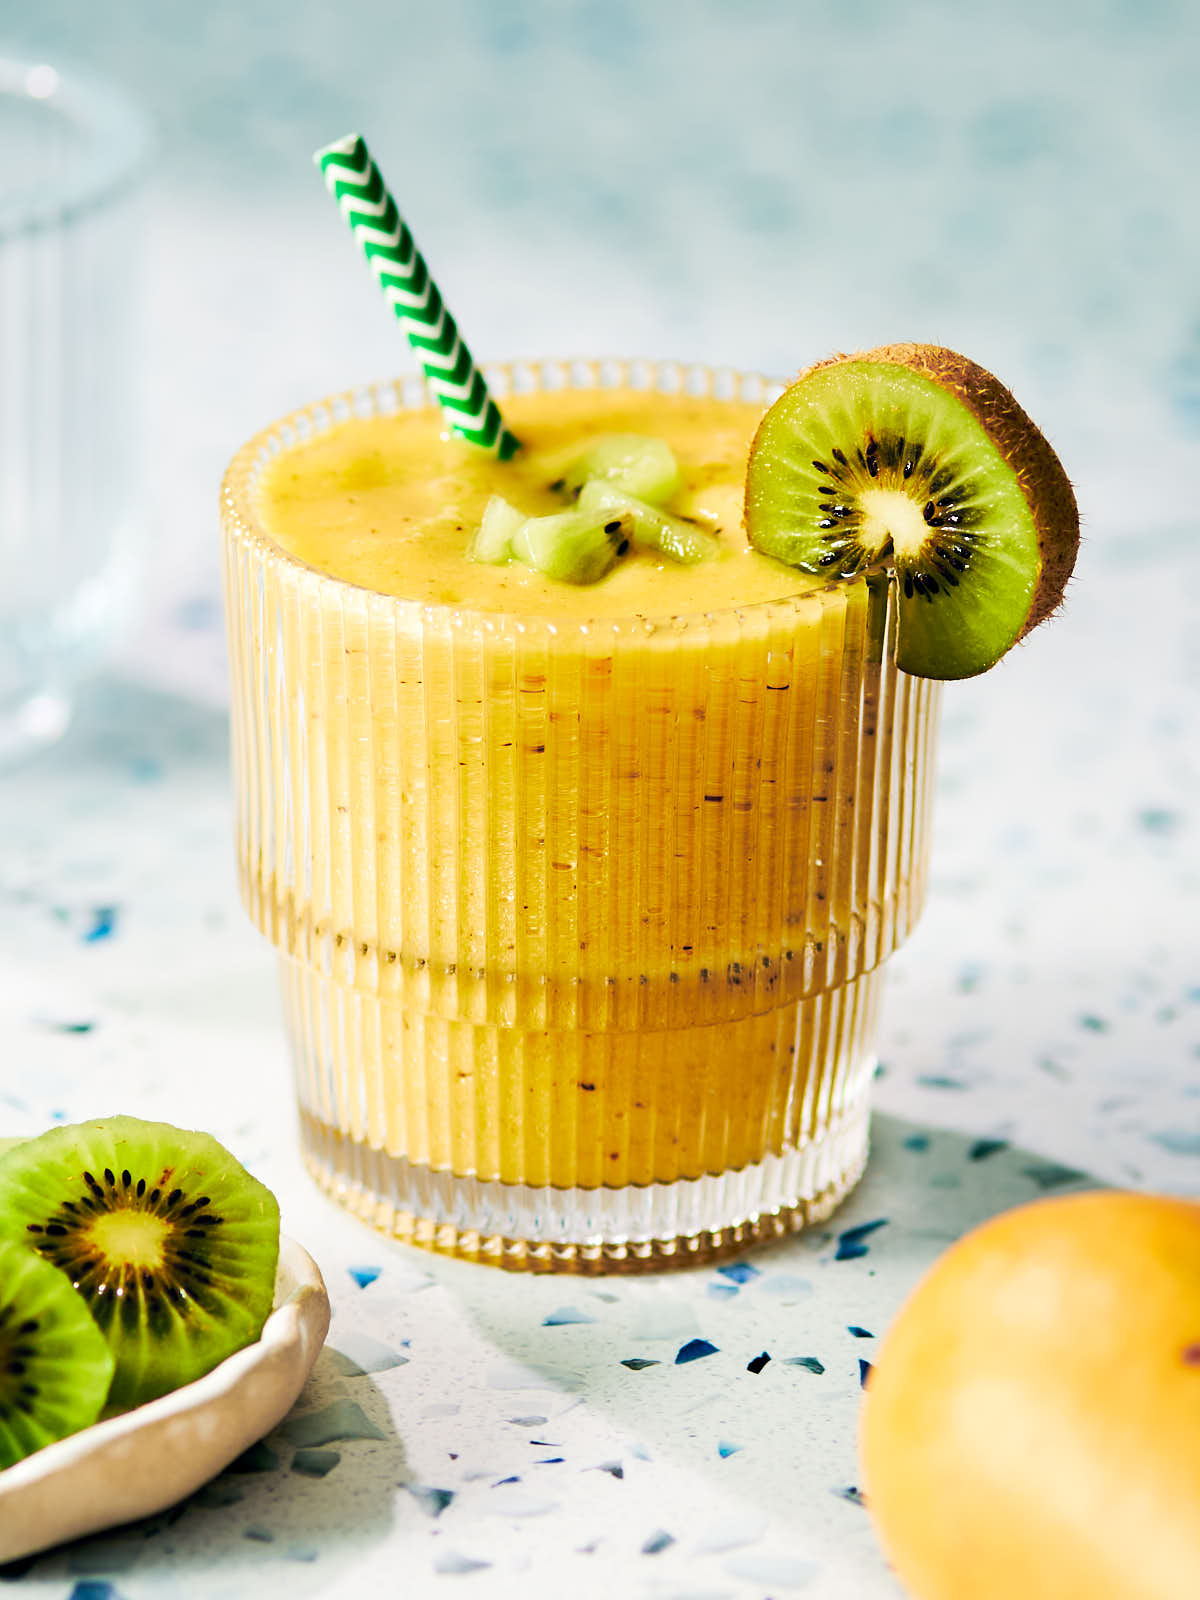 Mango Kiwi Smoothie in a glass topped with fresh kiwi fruit.